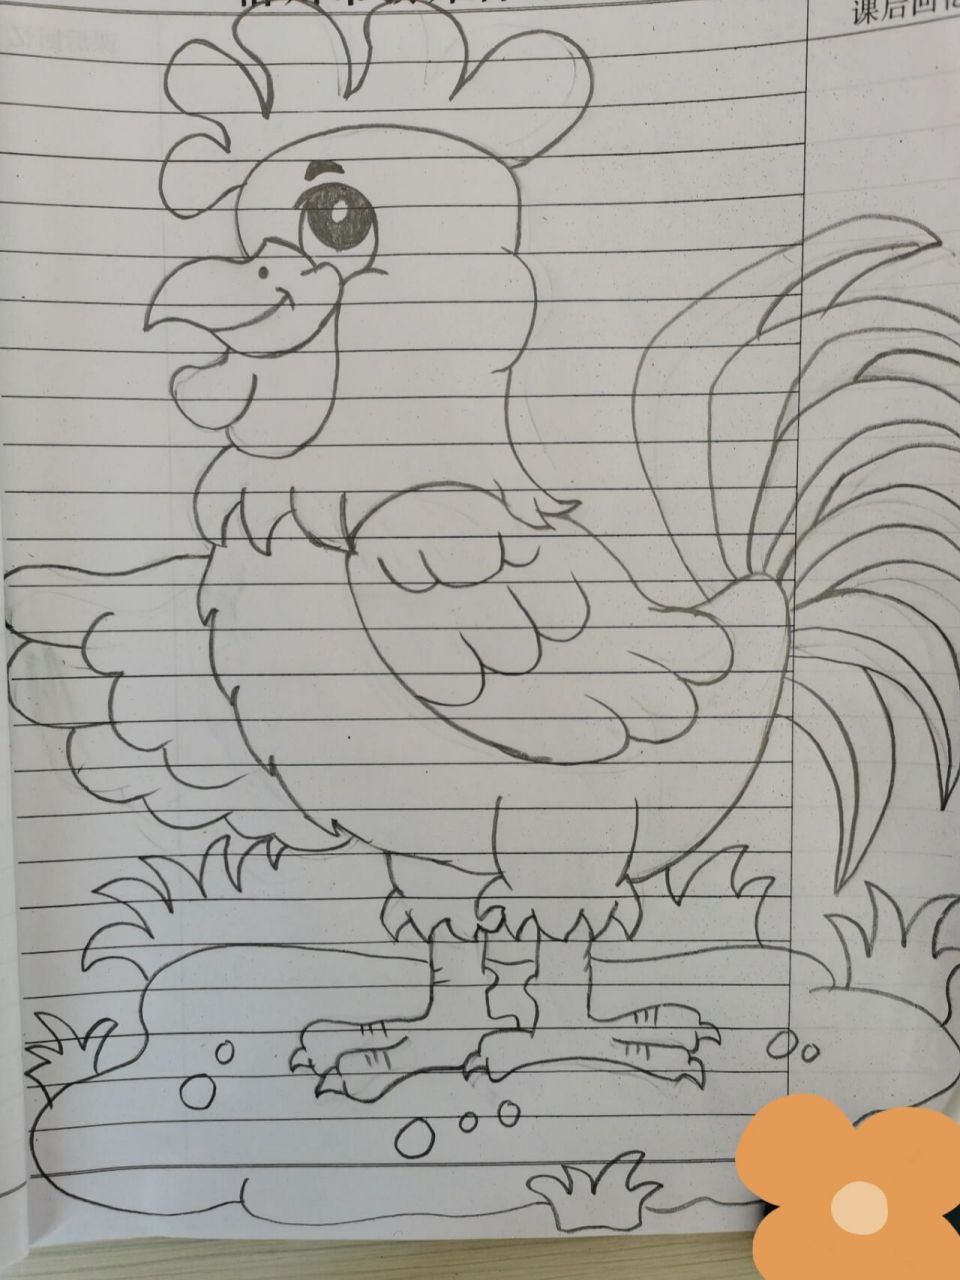 简单大公鸡儿童简笔画图片